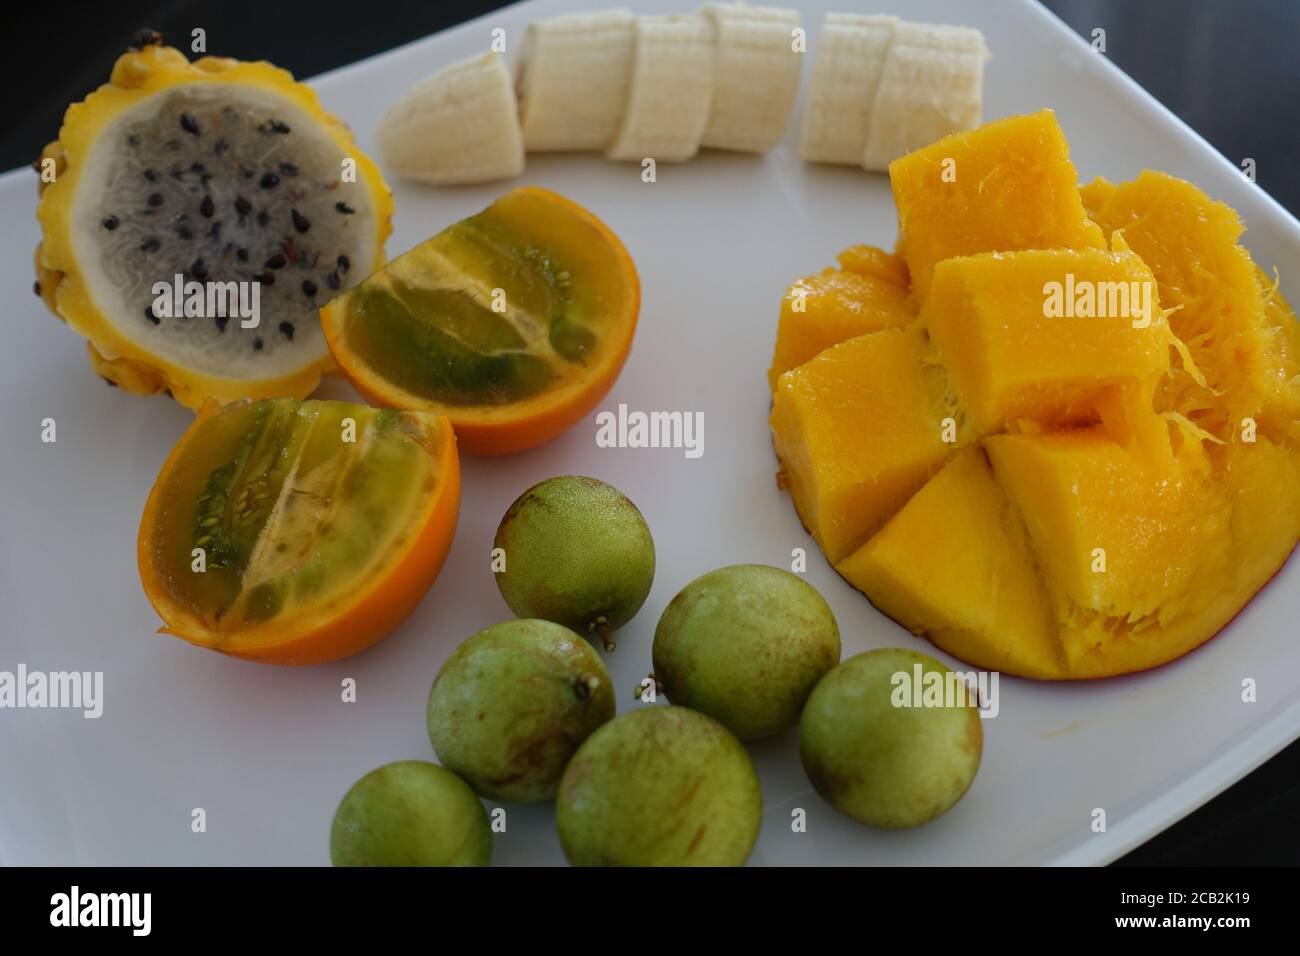 Collection de fruits tropicaux - mangue, Banana, Dragonfruit, Mammon, Lulo. Banque D'Images